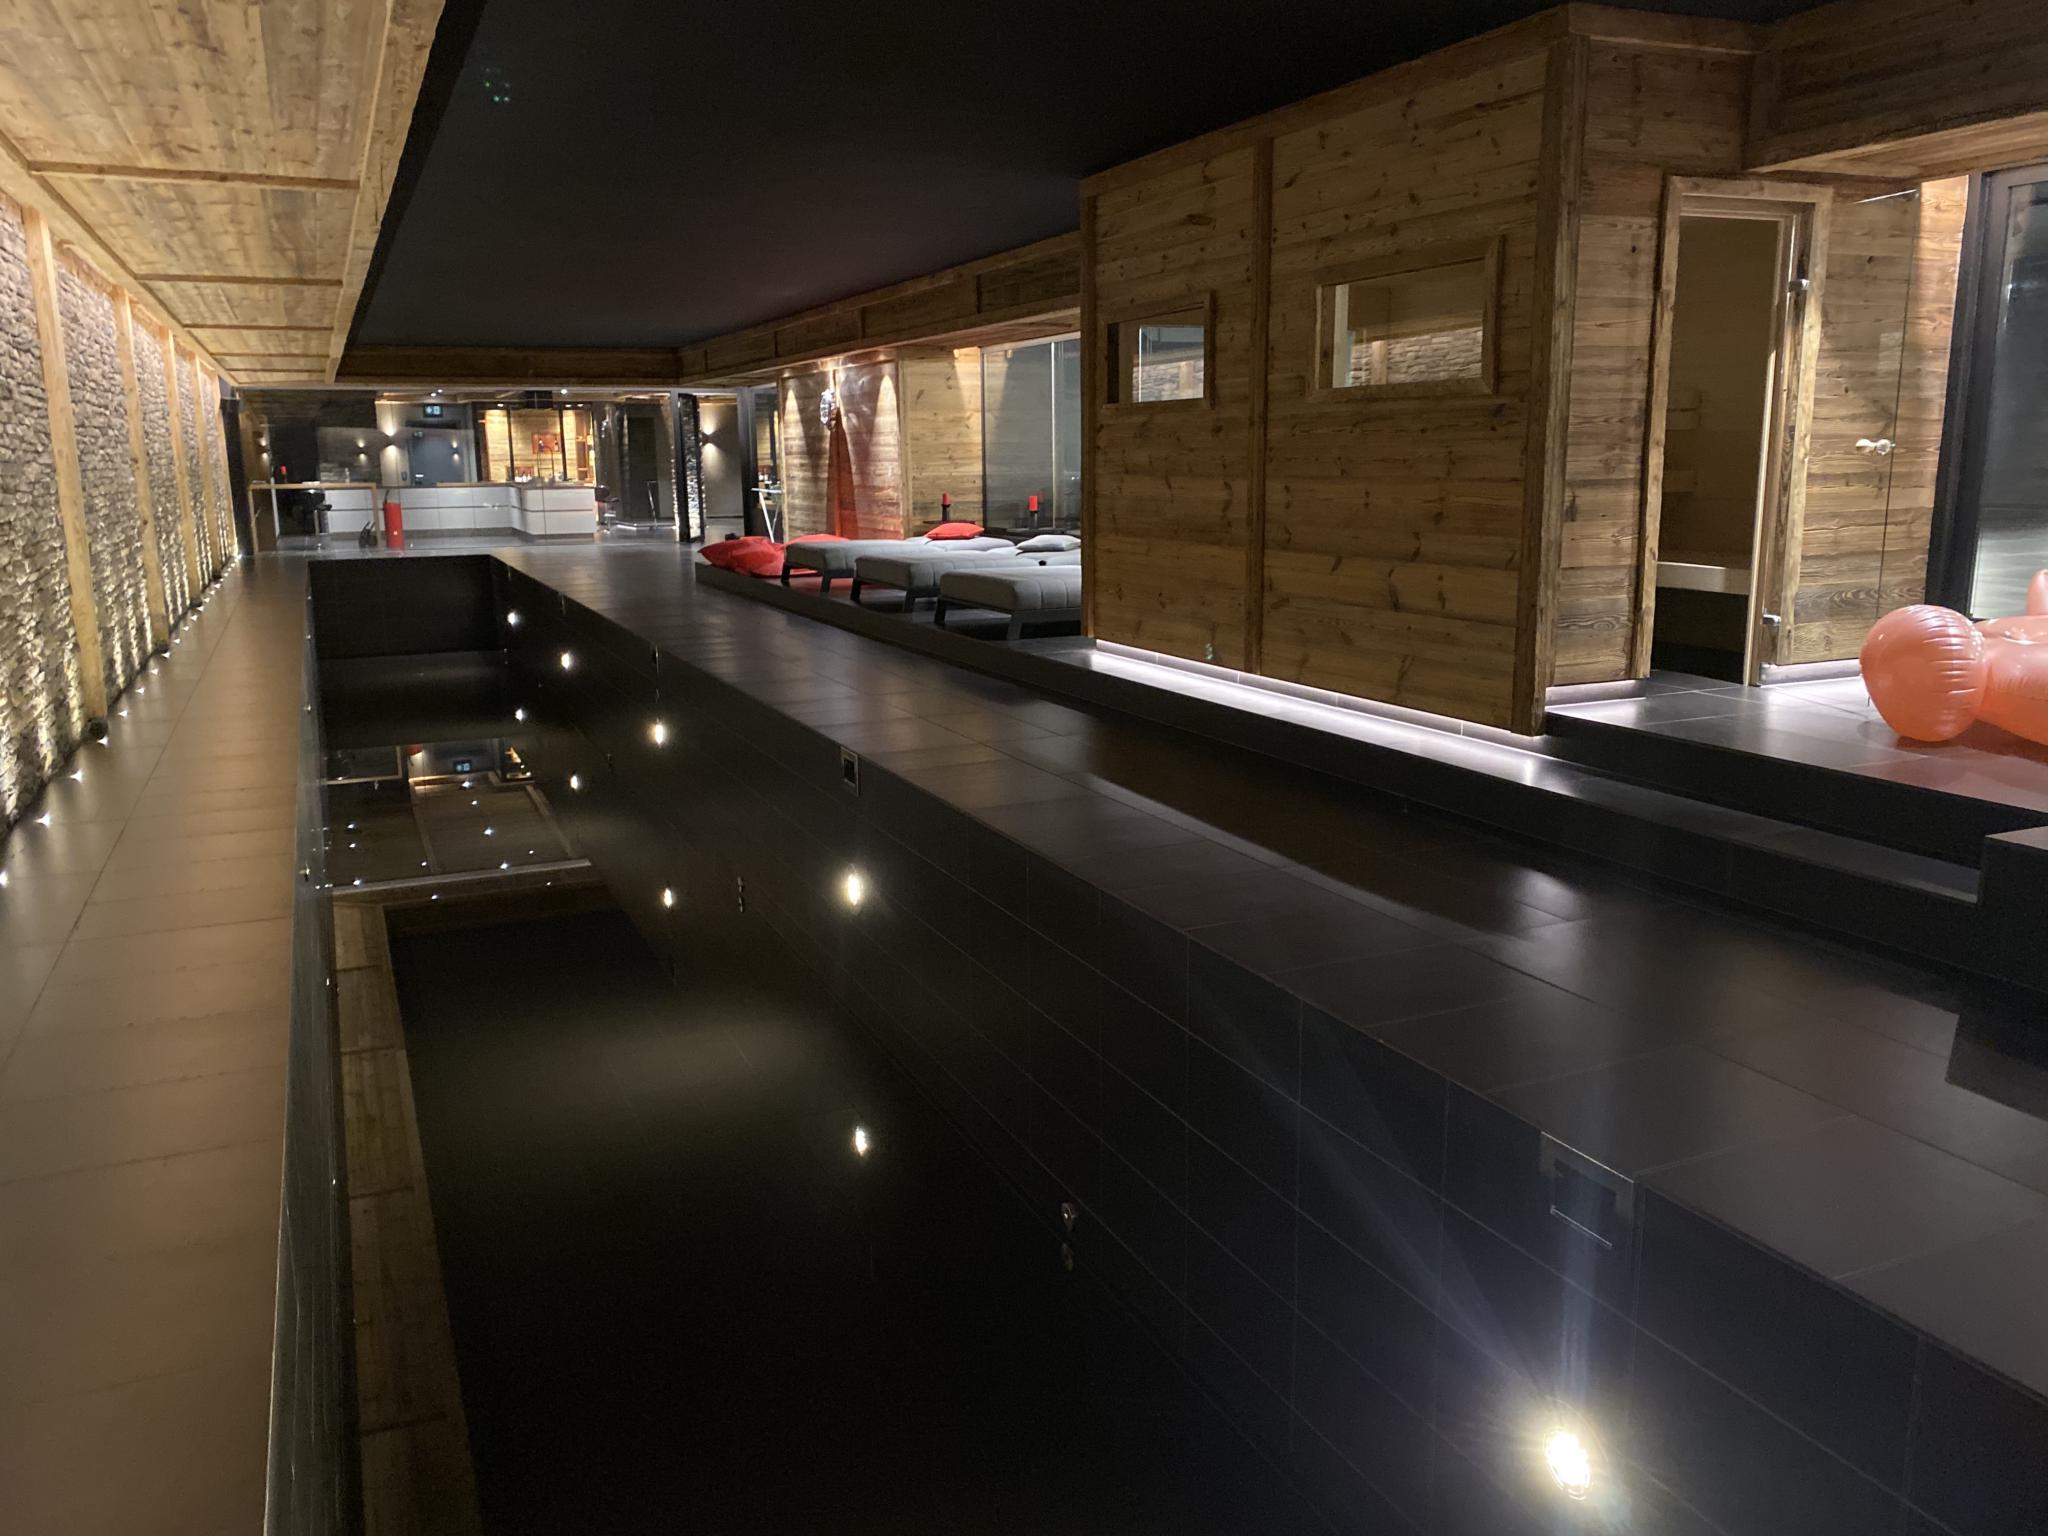 700 m2 pour Fitness VIP, couloir de natation, sauna, bain froid, bain japonais, espace détente avec cheminée